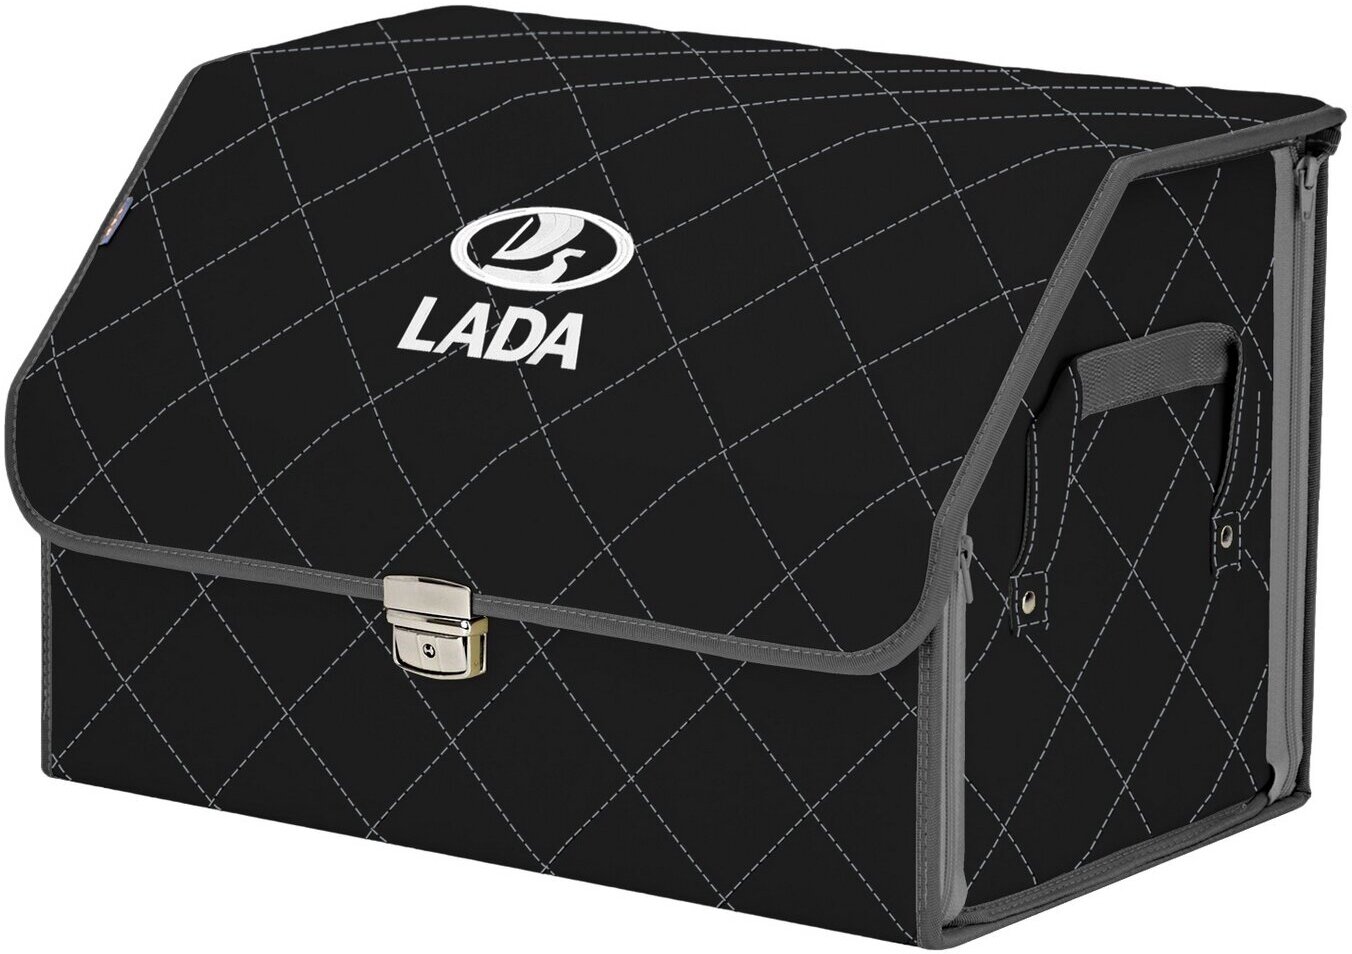 Органайзер-саквояж в багажник "Союз Премиум" (размер L). Цвет: черный с серой прострочкой Ромб и вышивкой LADA (лада).